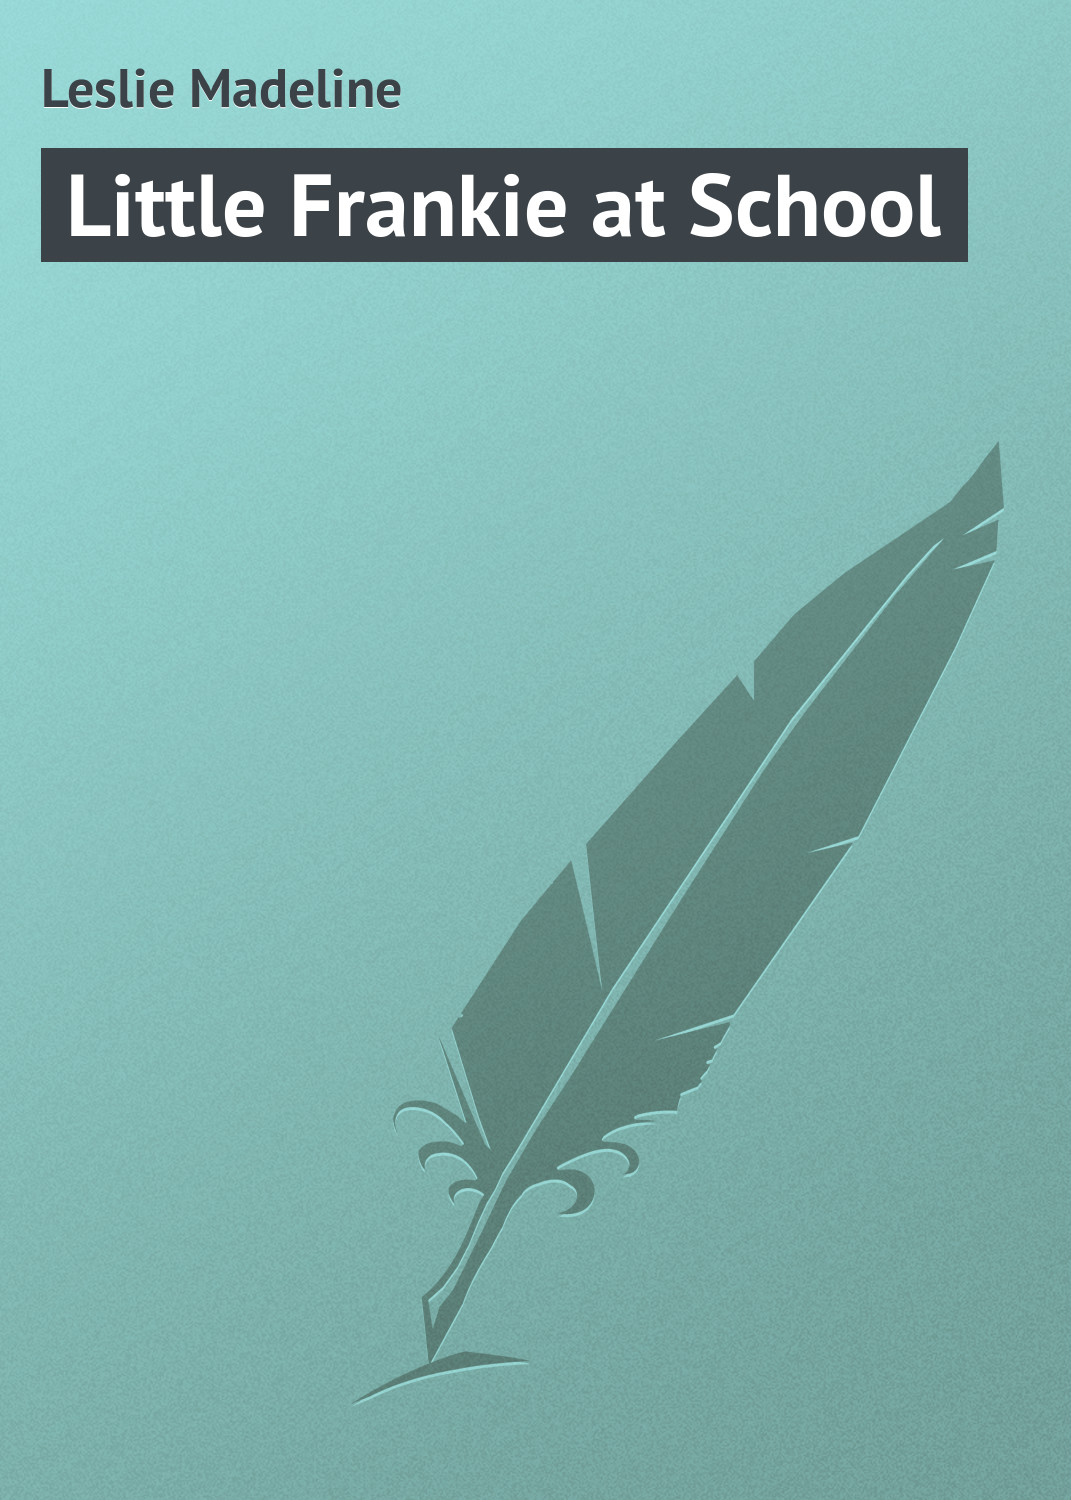 Книга Little Frankie at School из серии , созданная Madeline Leslie, может относится к жанру Зарубежная классика, Зарубежные детские книги. Стоимость электронной книги Little Frankie at School с идентификатором 23155227 составляет 5.99 руб.